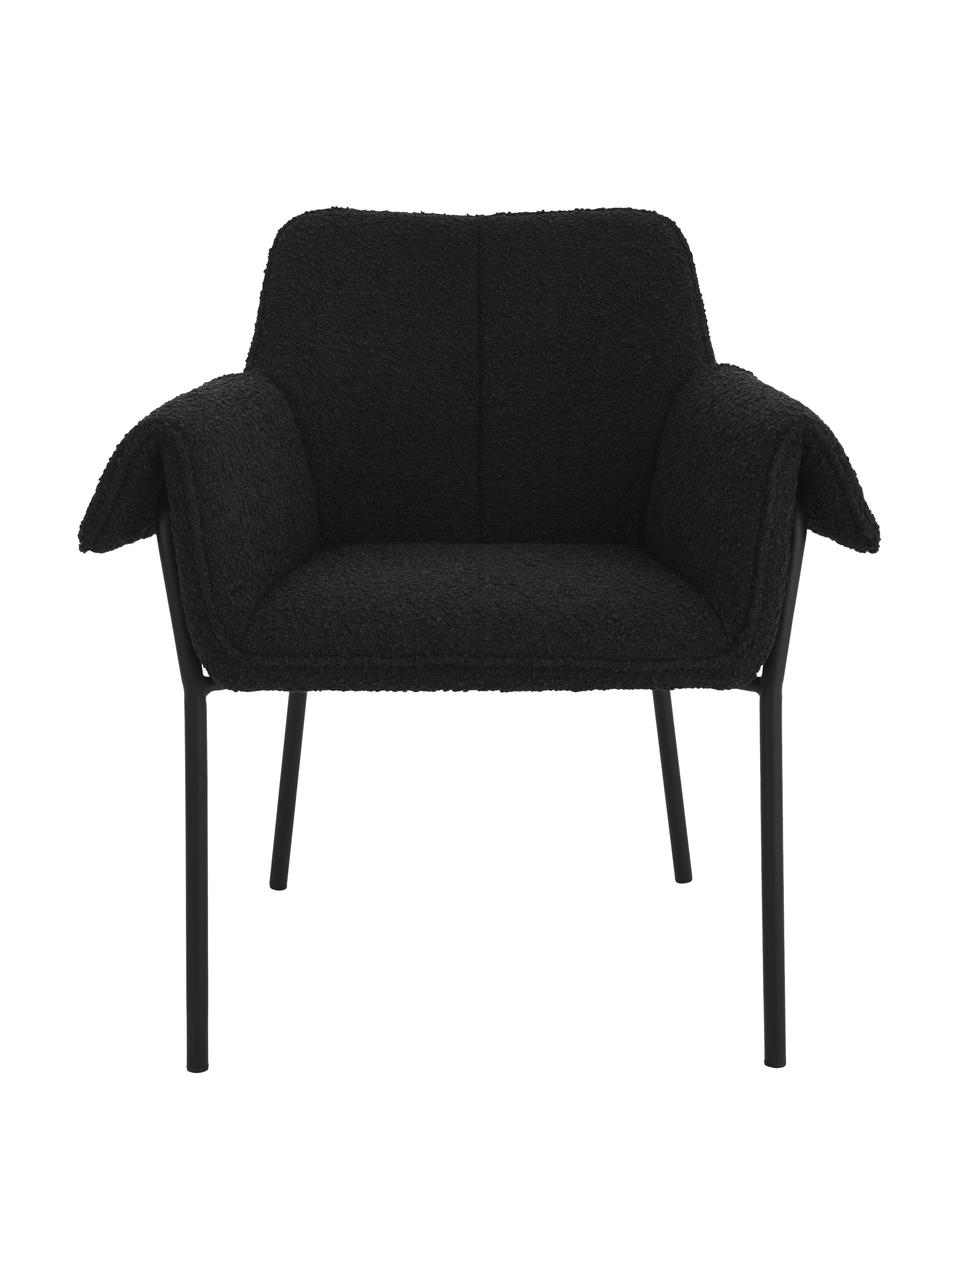 Bouclé židle s područkami Effekt, 2 ks, Černá, Š 73 cm, H 54 cm